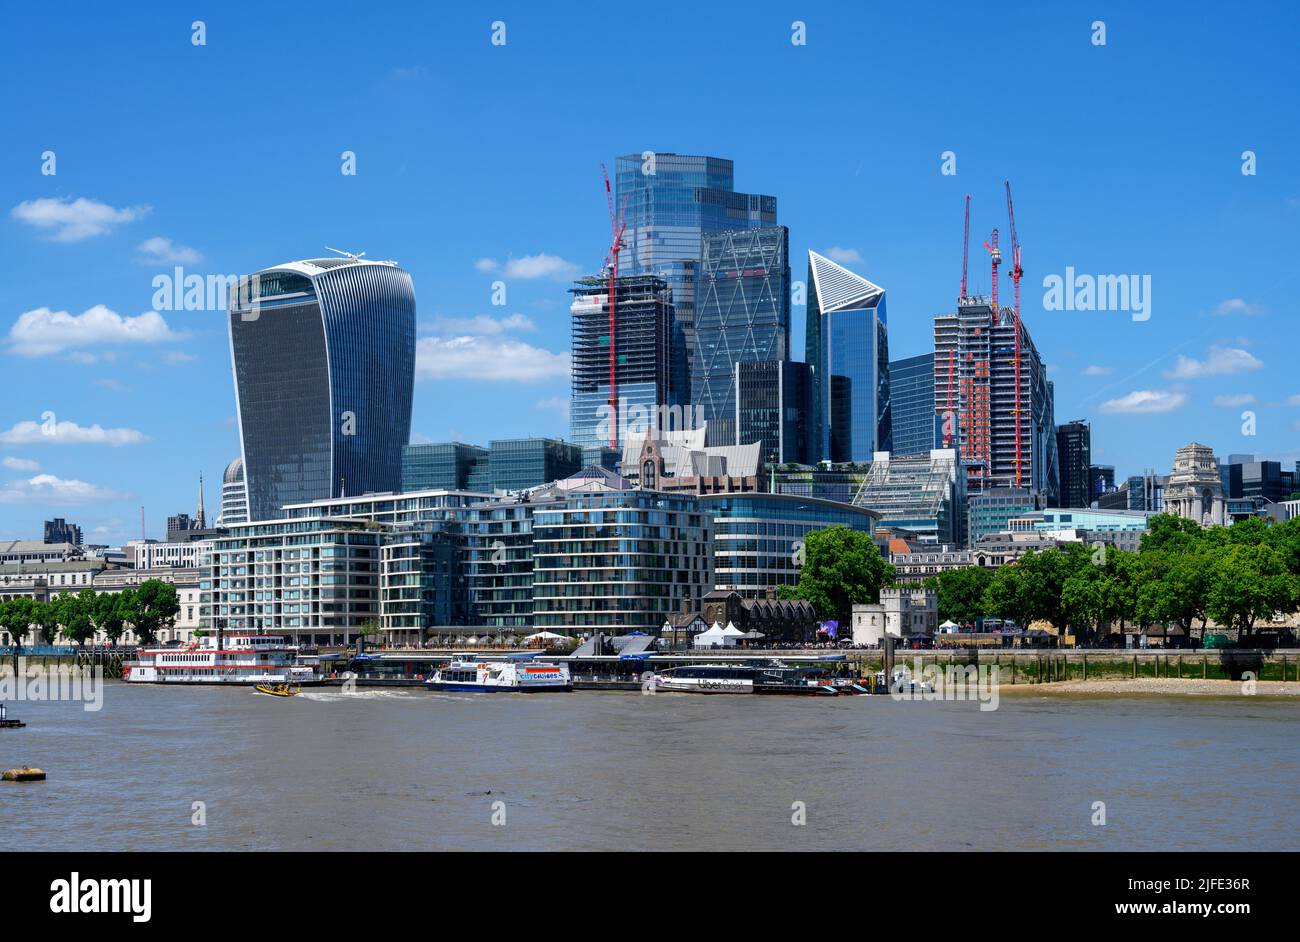 Vue sur la ville de Londres depuis la rive sud avec une rue Fenchurch (bâtiment Walkie Talkie) au premier plan, la Tamise, Londres, Angleterre, Royaume-Uni Banque D'Images